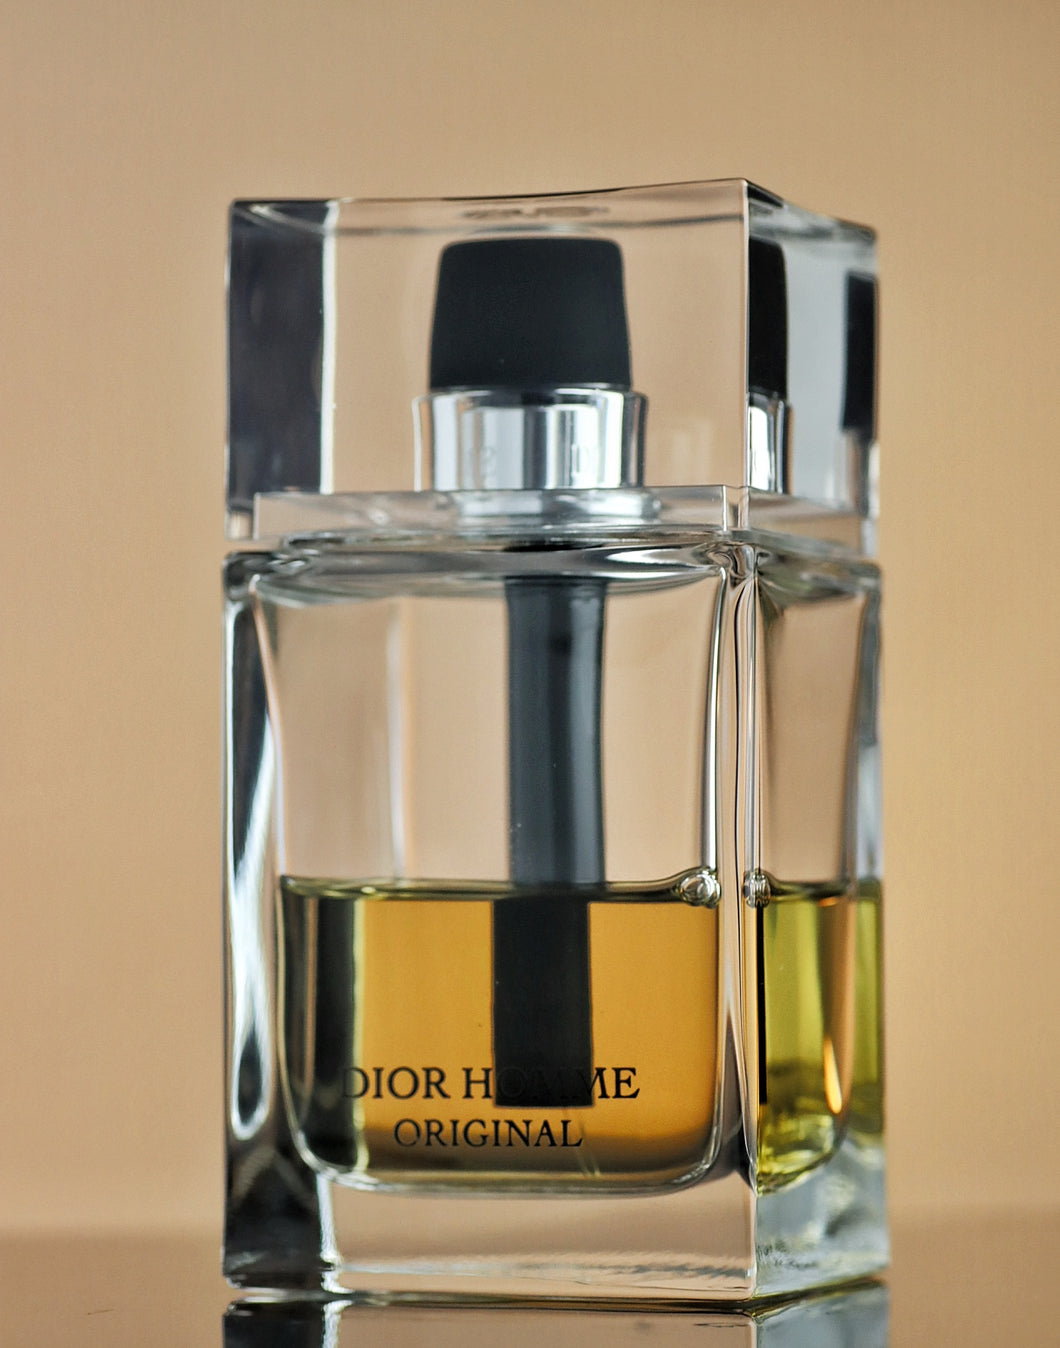 Dior Homme Original | Fragrance Sample | Perfume Sample | Tester